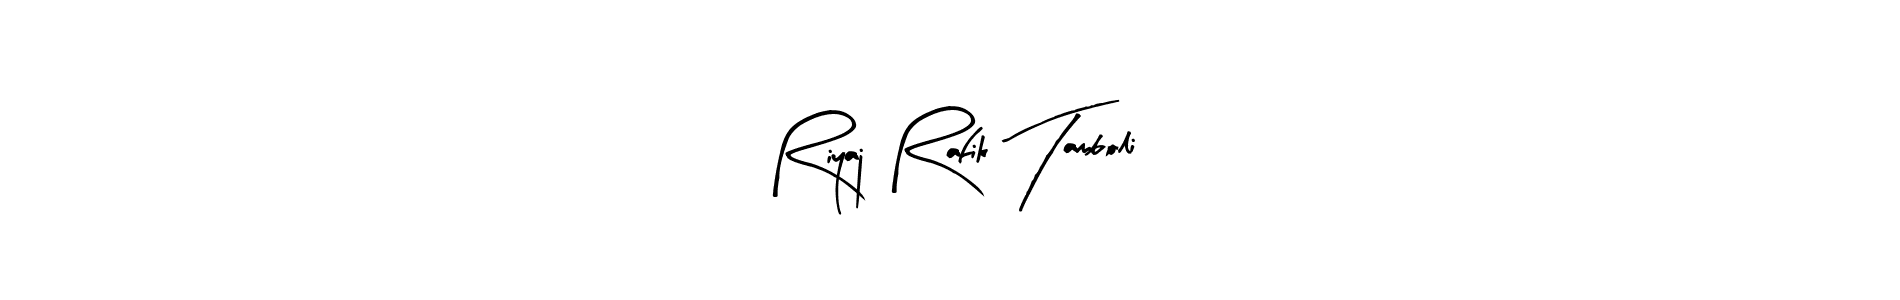 How to Draw Riyaj Rafik Tamboli signature style? Arty Signature is a latest design signature styles for name Riyaj Rafik Tamboli. Riyaj Rafik Tamboli signature style 8 images and pictures png